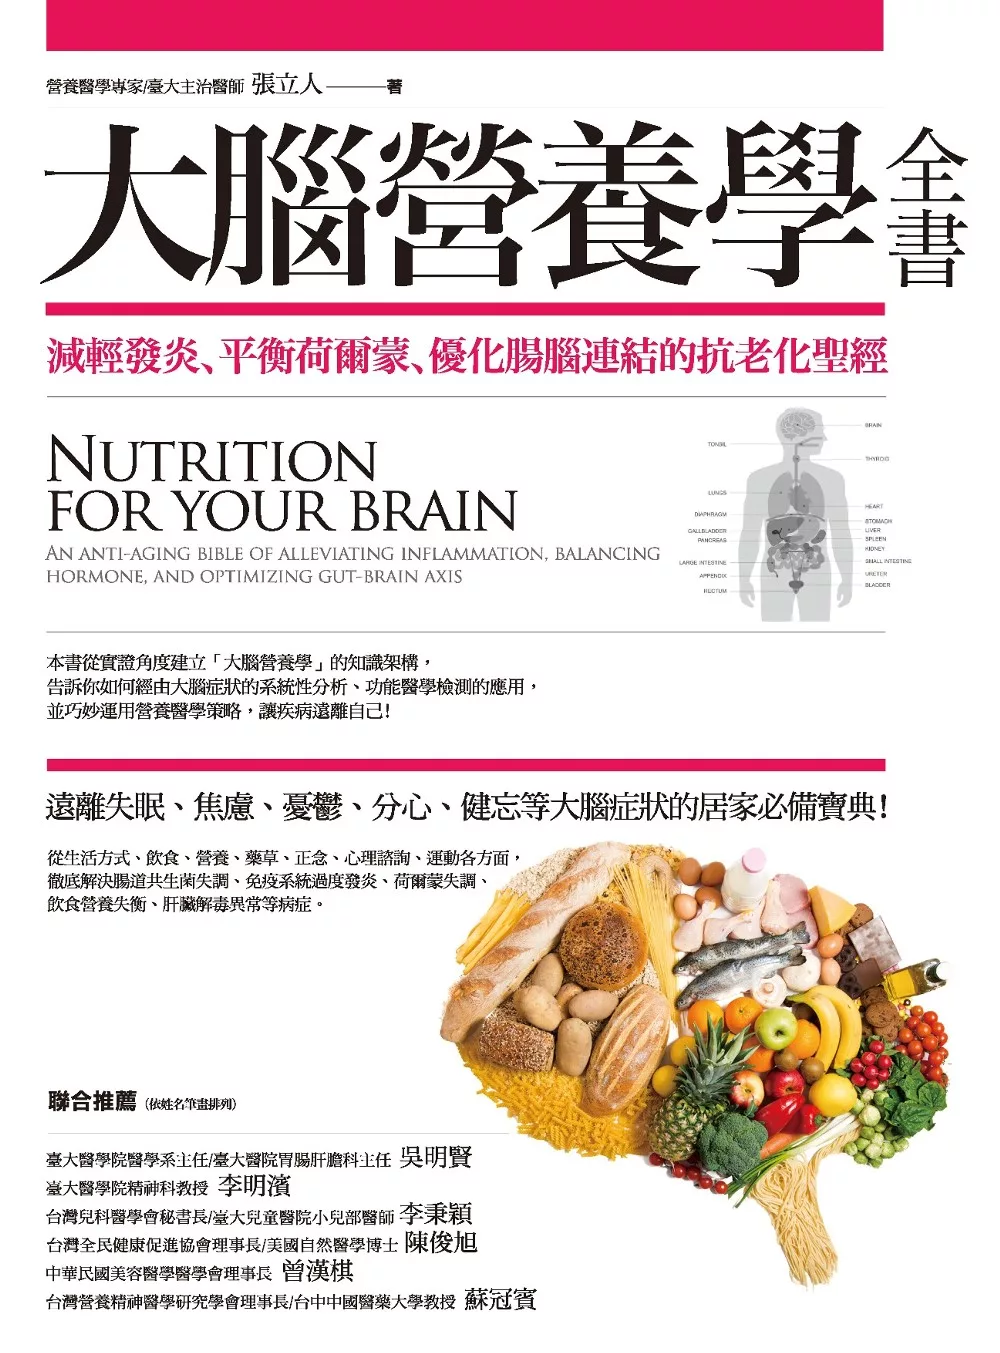 大腦營養學全書:減輕發炎、平衡荷爾蒙、優化腸腦連結的抗老化聖經 (電子書)